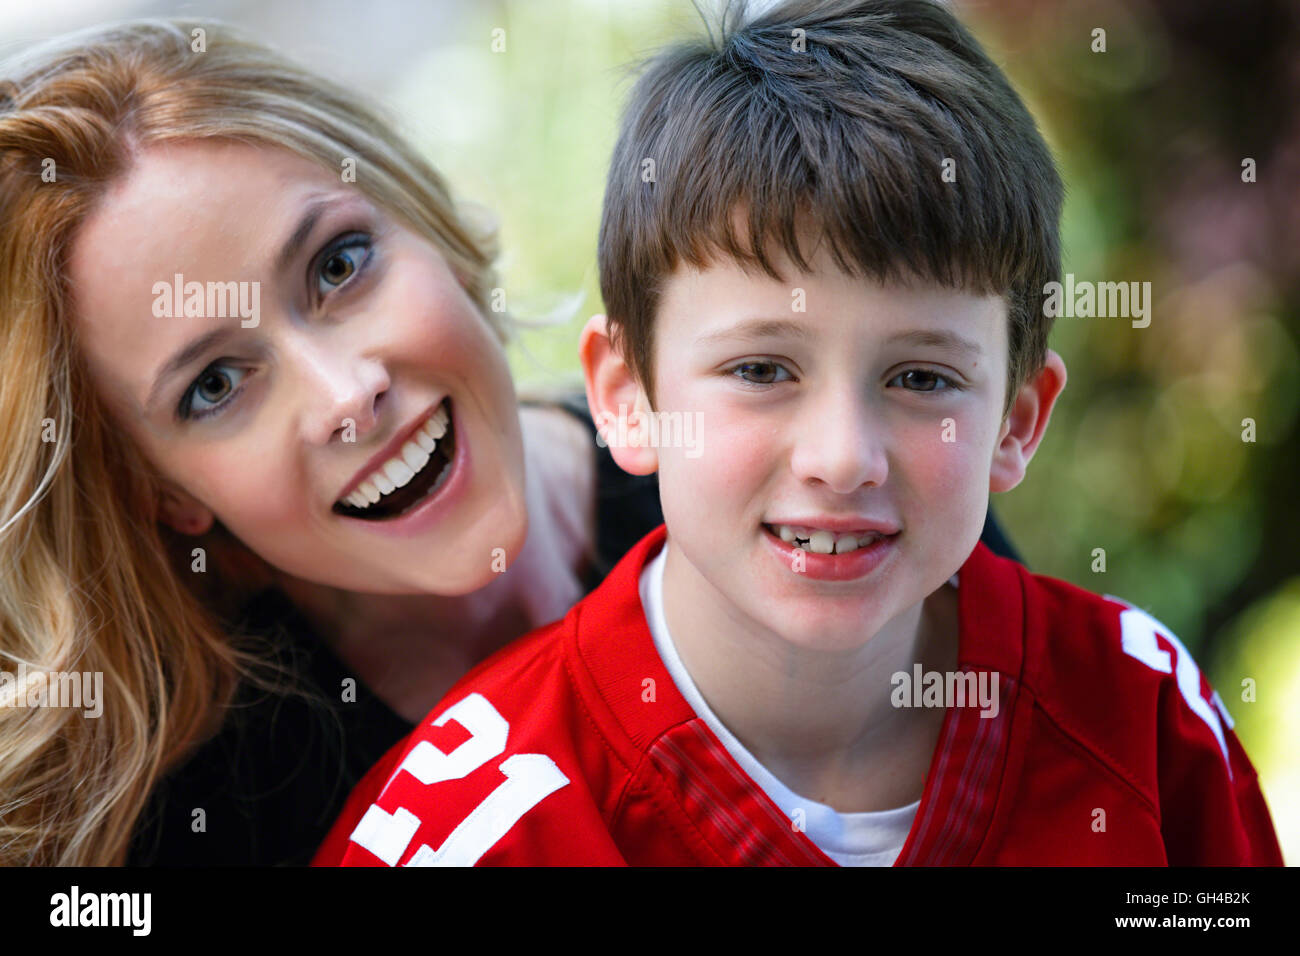 Outdoor retrato de una madre y su hijo ansioso y sonriente Foto de stock